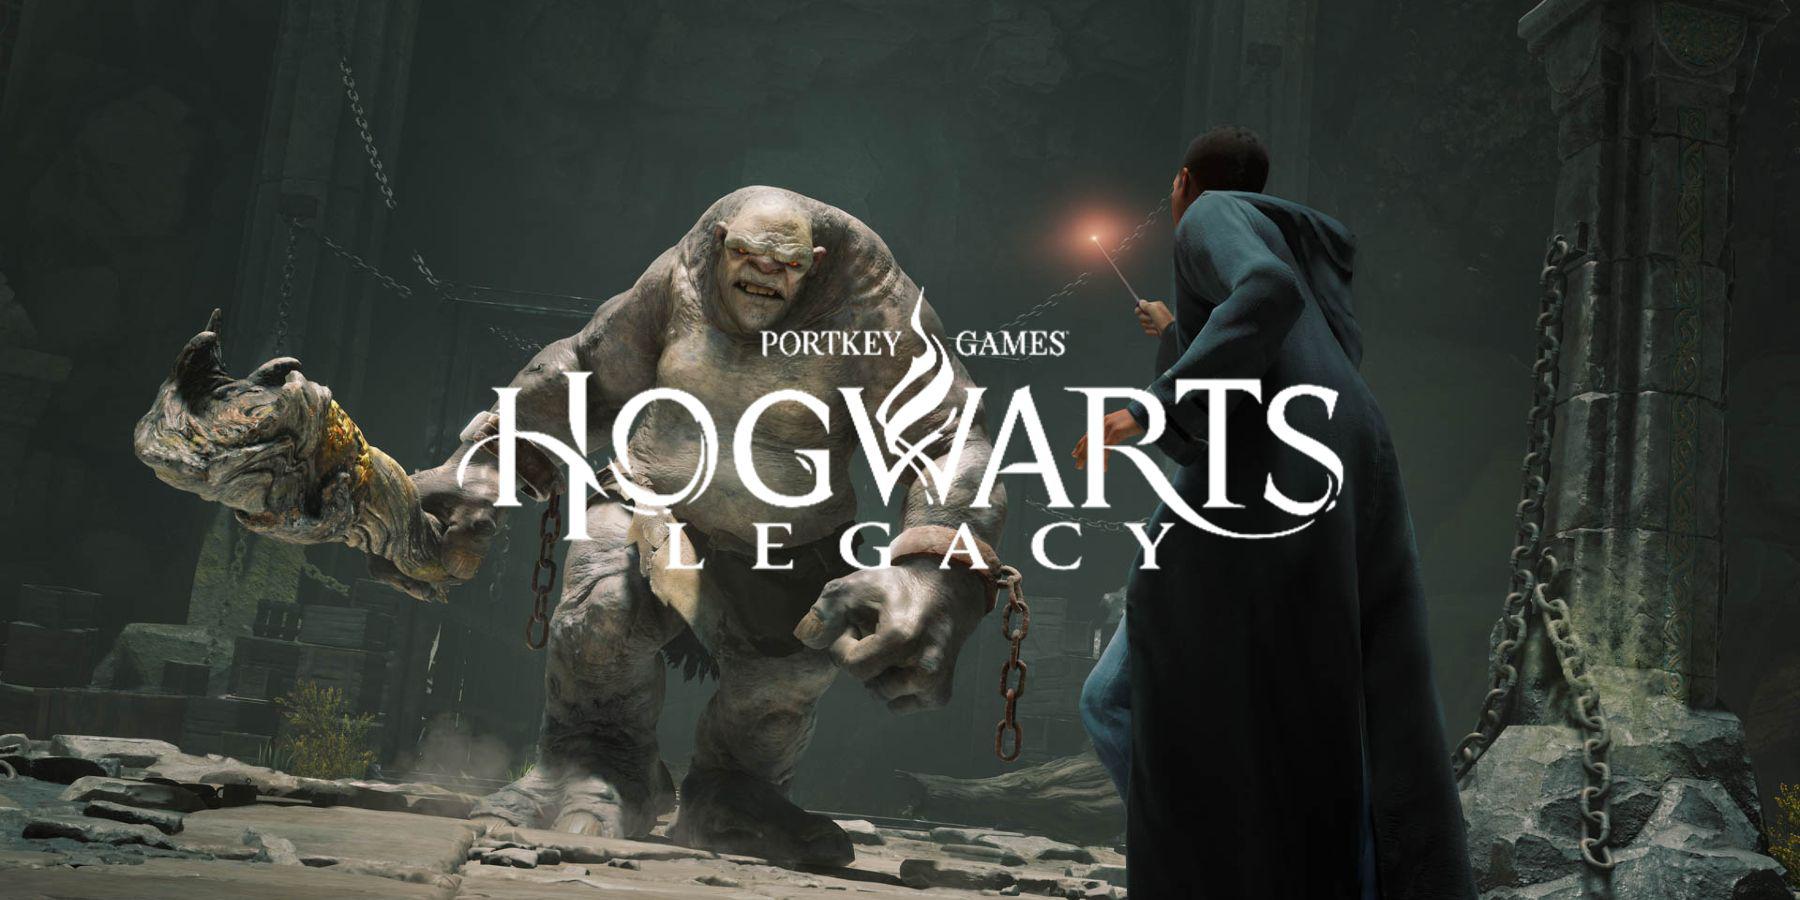 vendas do legado de hogwarts